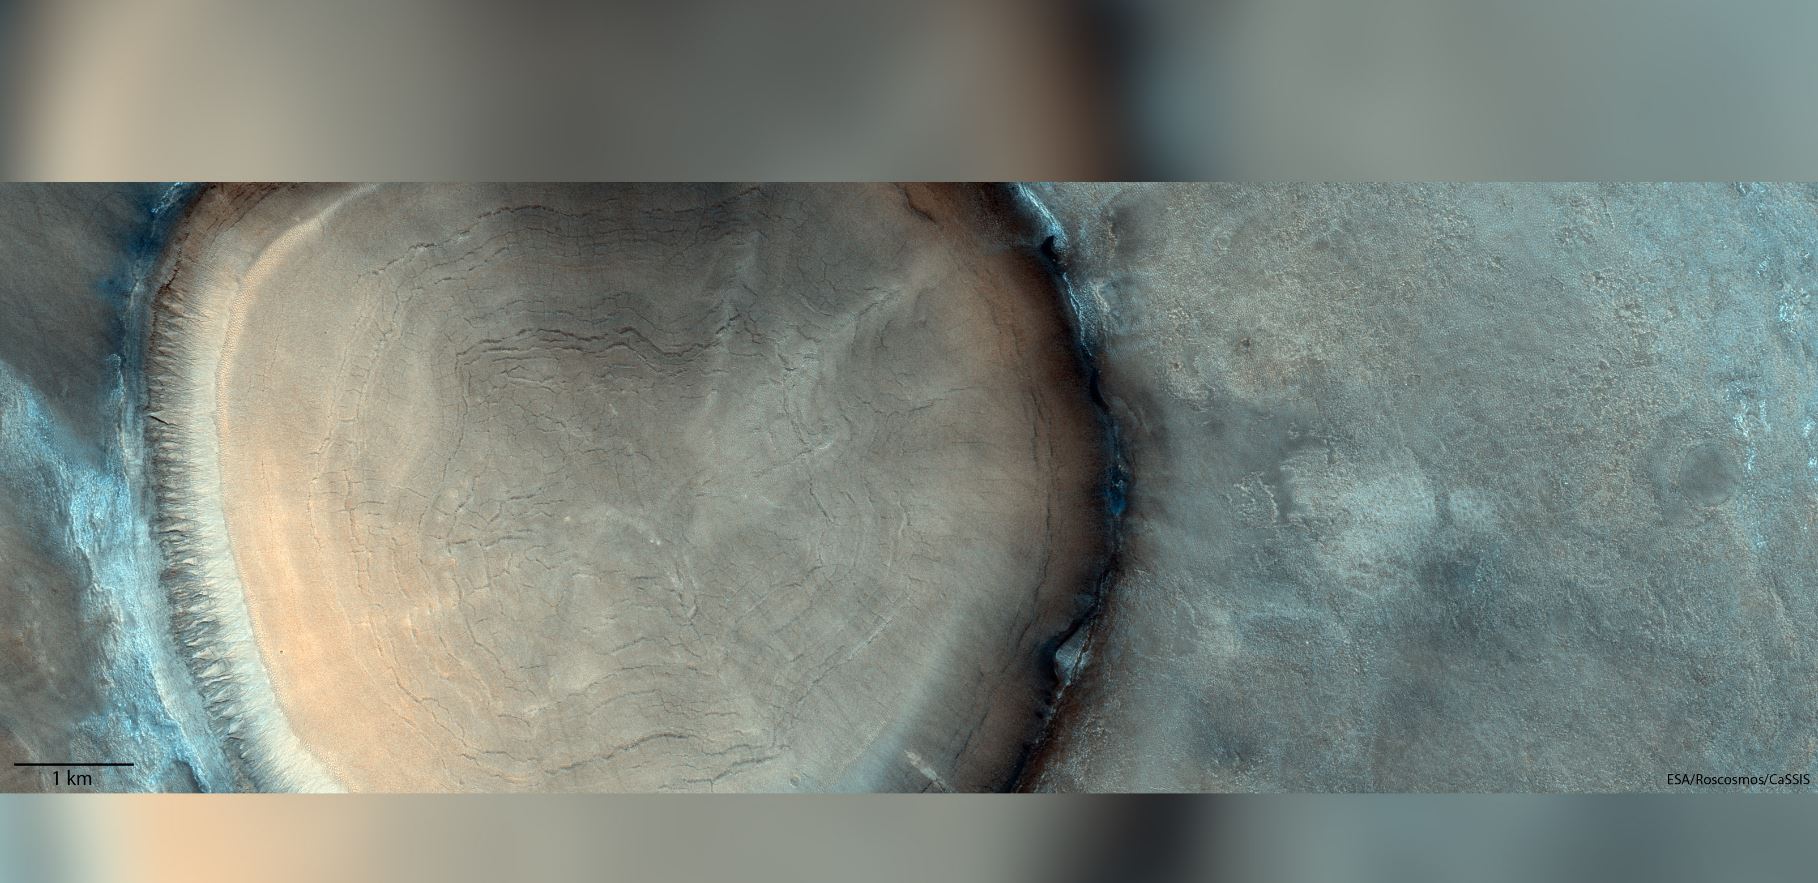 На Марсе обнаружен гигантский ударный кратер в виде пня с кольцами роста